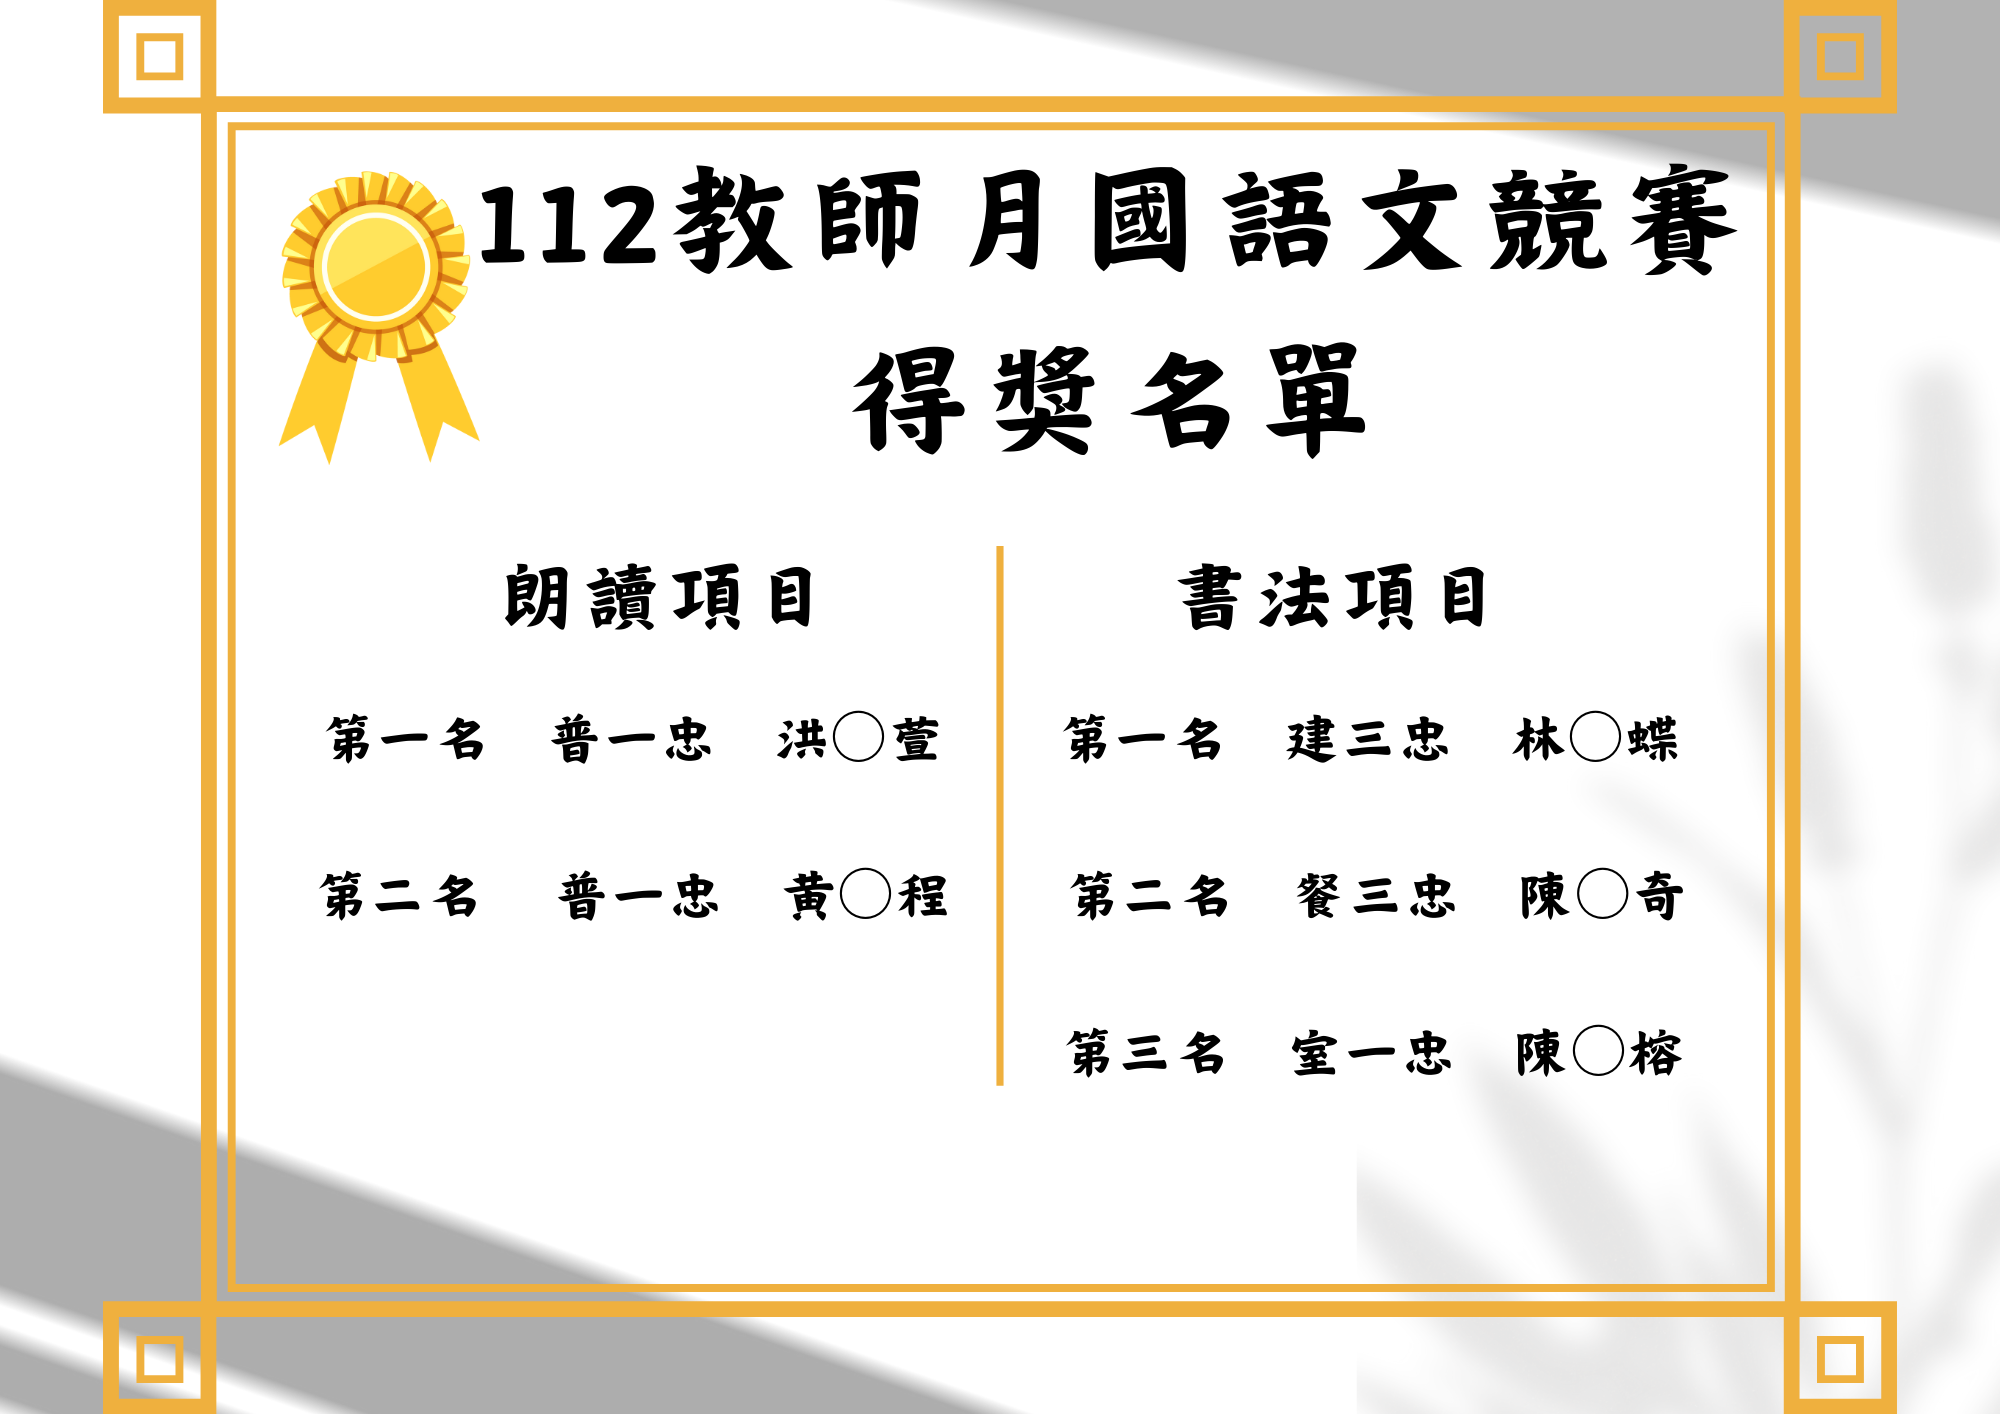 112-1國語文競賽得獎名單